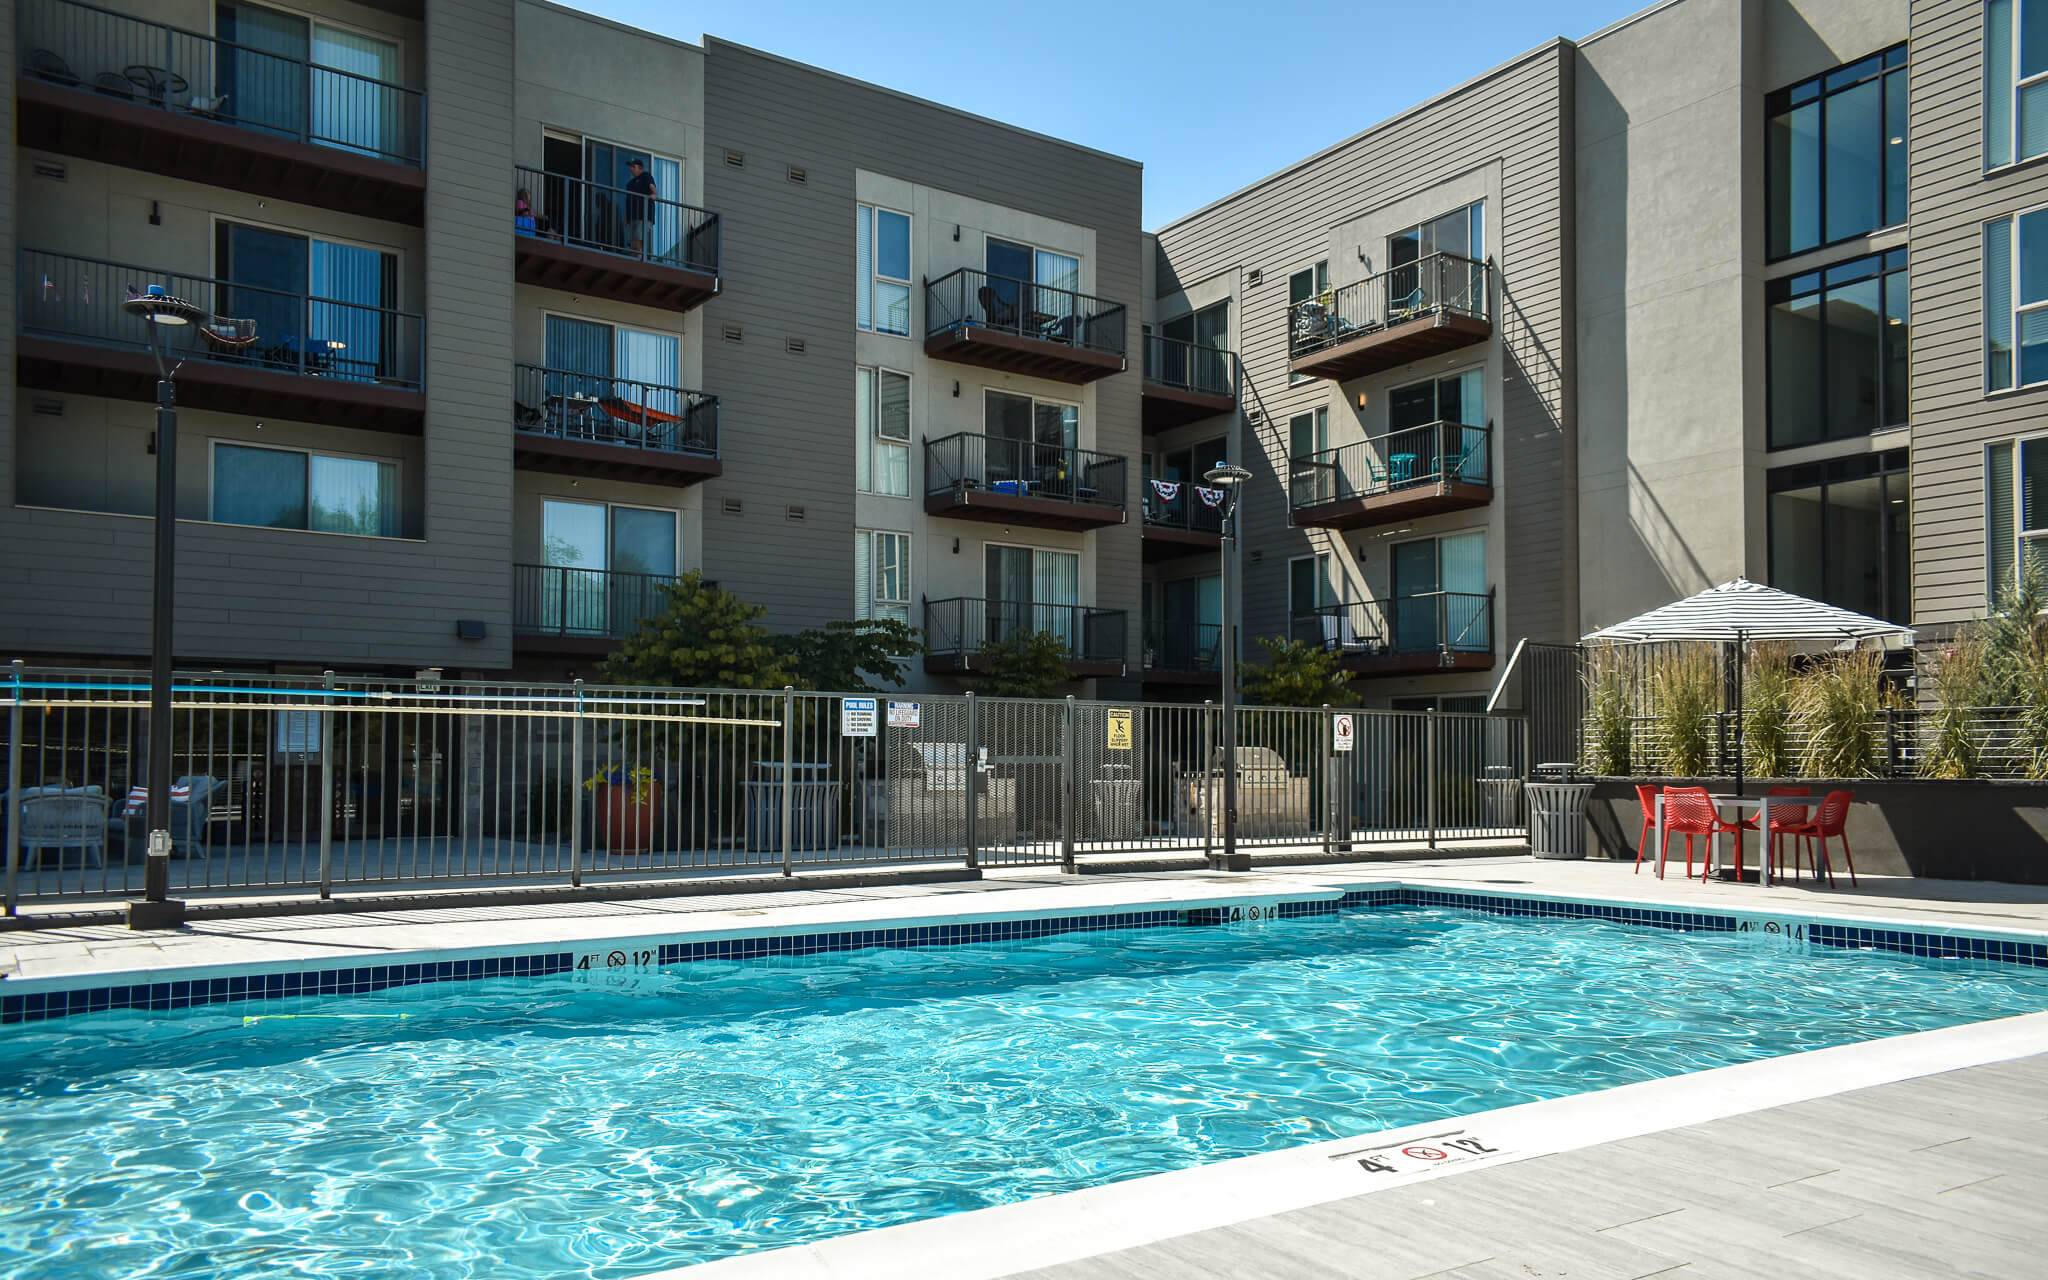 Paragon Corporate Housing - Park Place Apartments - Richland Washington